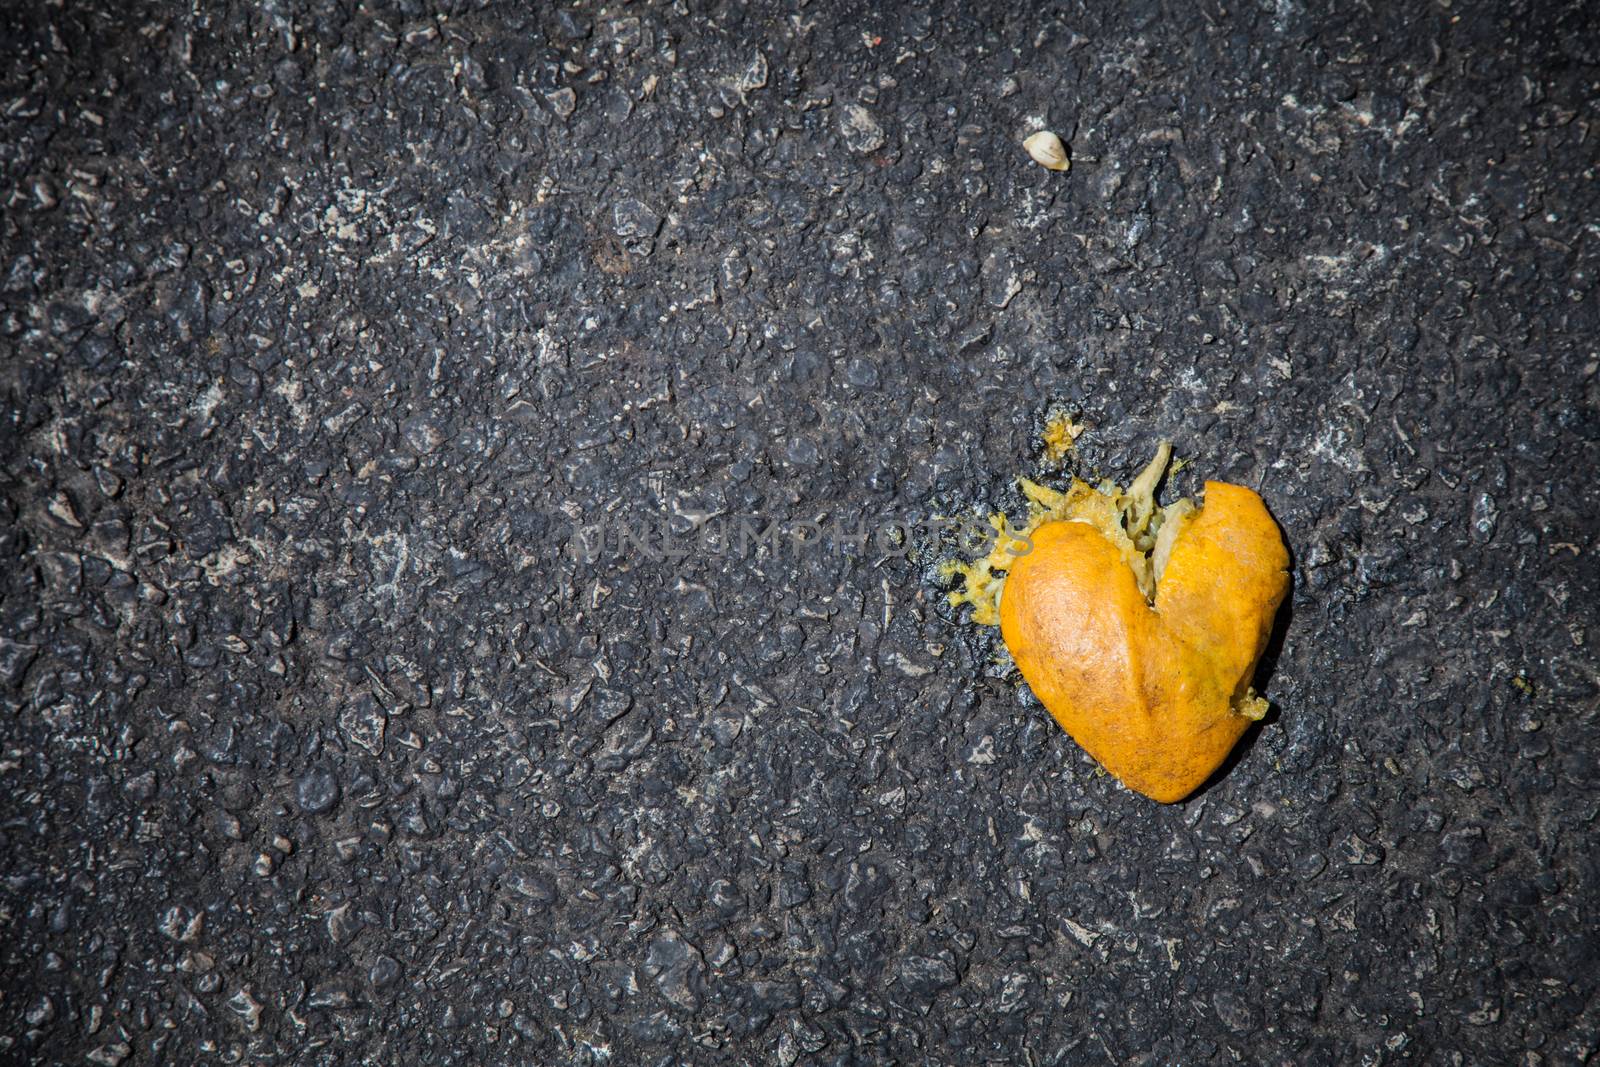 Smashed orange shaped like broken heart on the asphalt